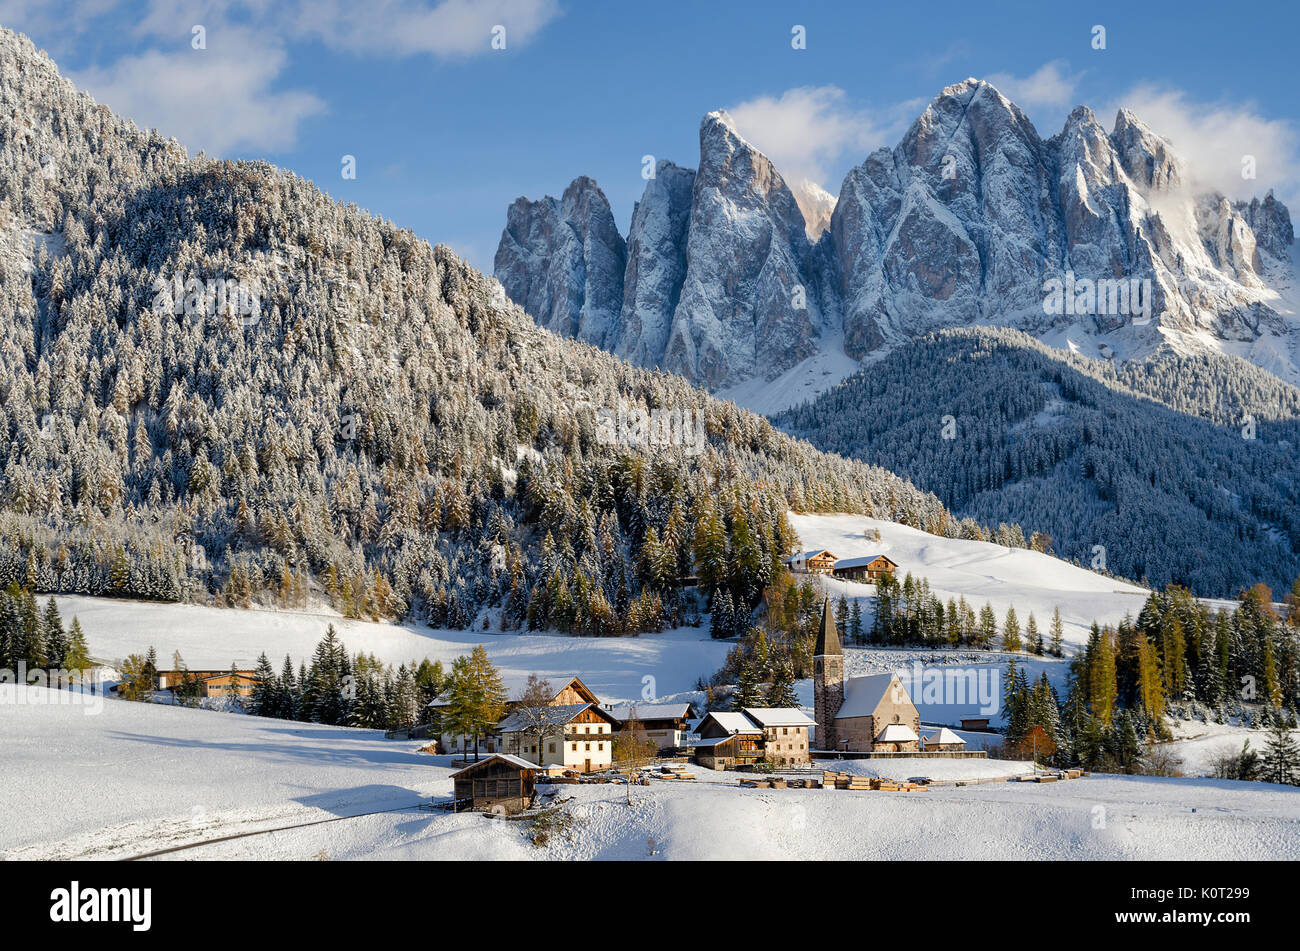 La chiesa nel villaggio Santa Maddalena o Santa Maddalena in Vileness o Val di Funes con Dolomiti sotto un manto di neve in inverno in Italia. Foto Stock